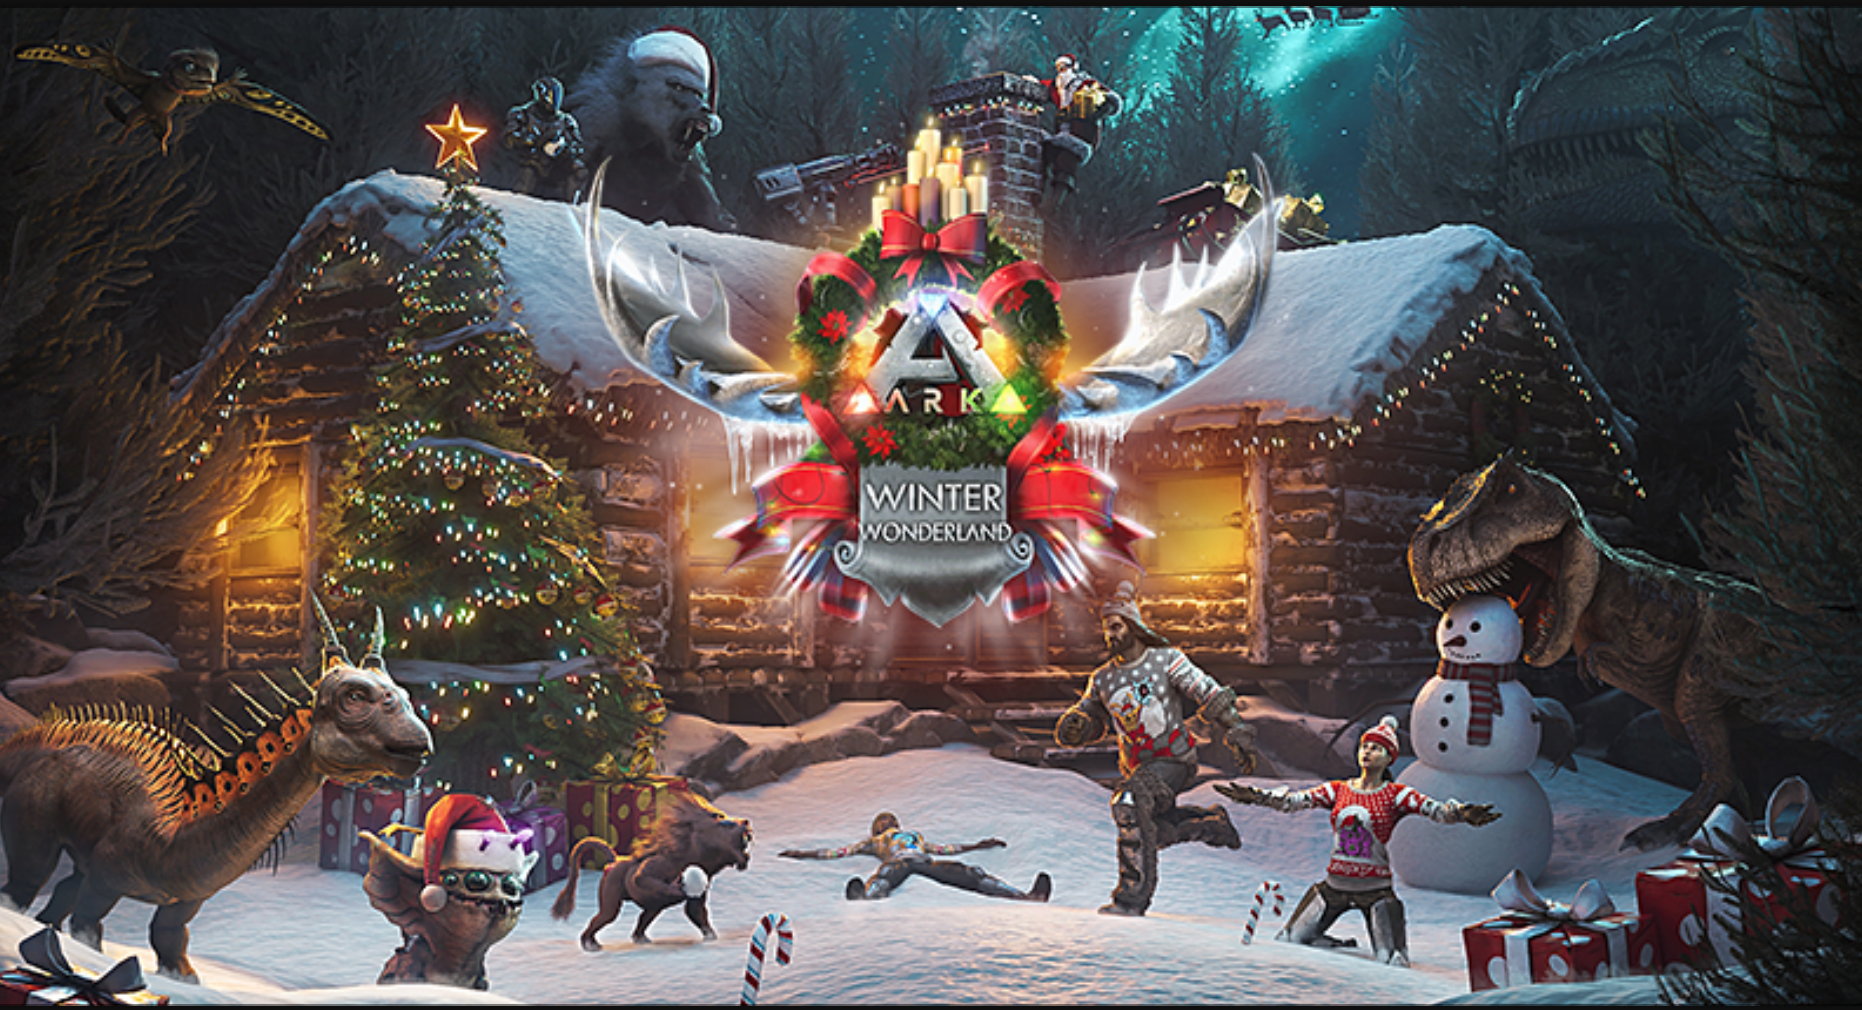 Winter Wonderland Ark:Survival till 6th January